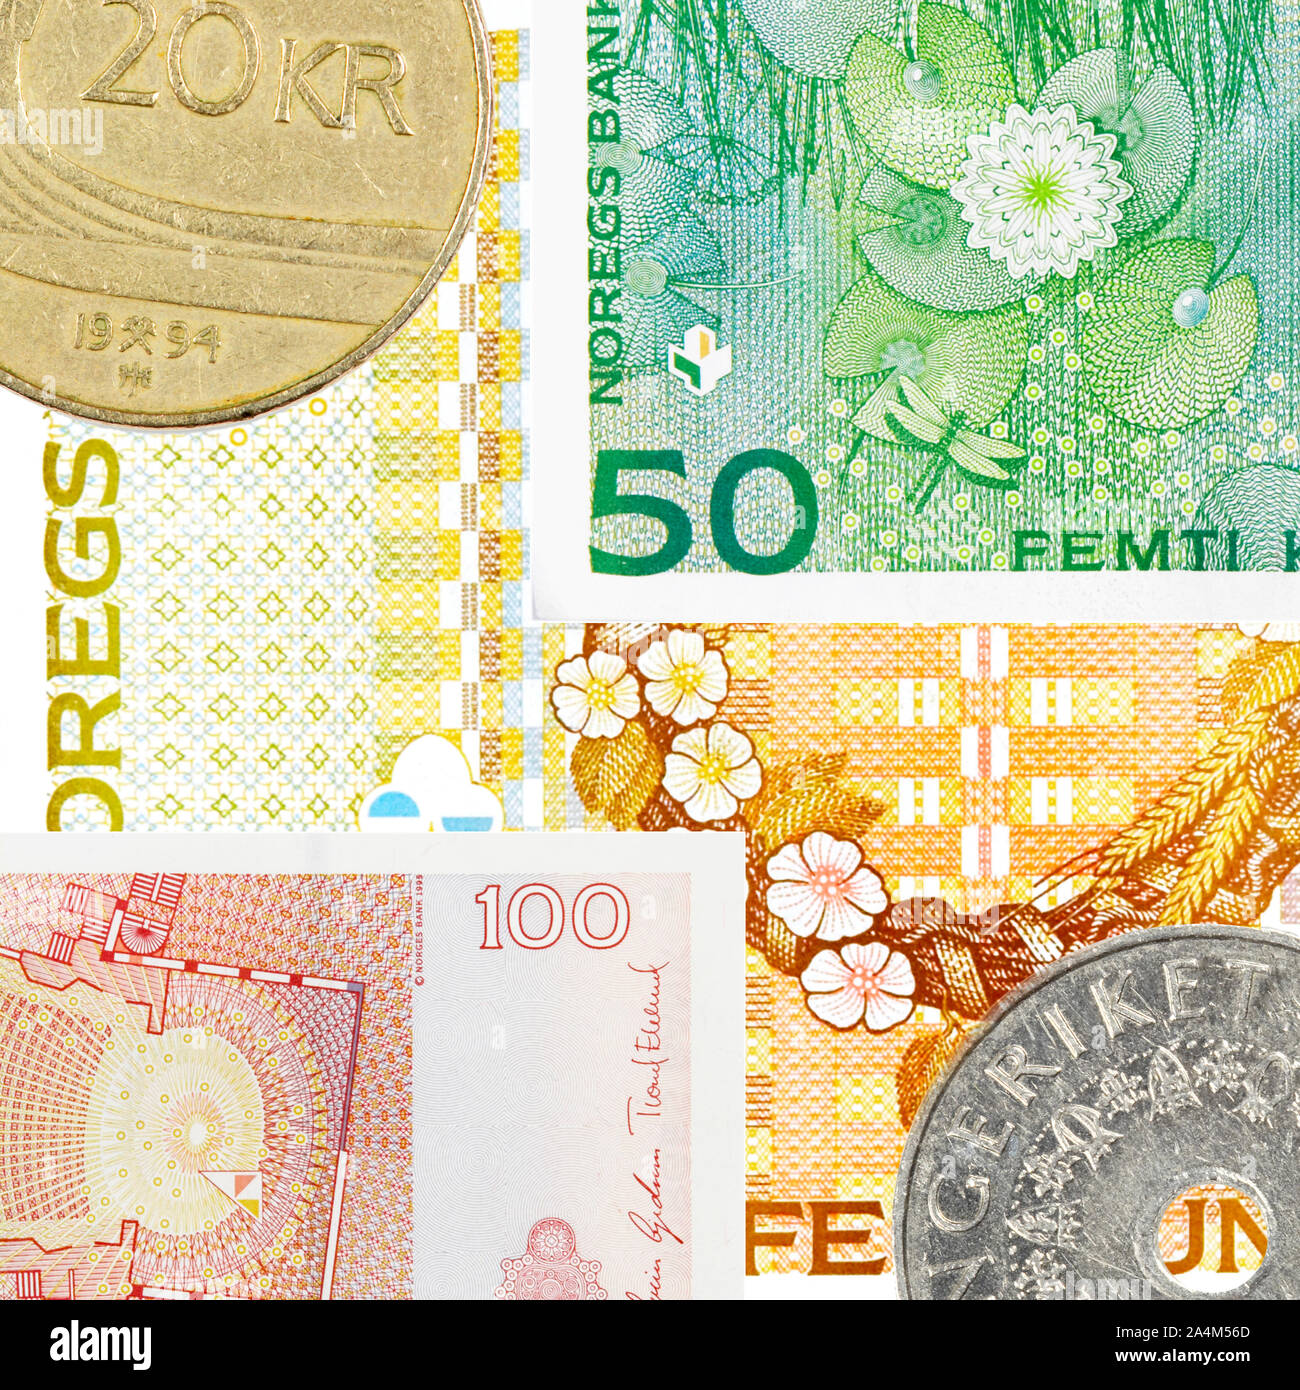 Norwegian money - Currency - Finances - kroner - krones Stock Photo - Alamy